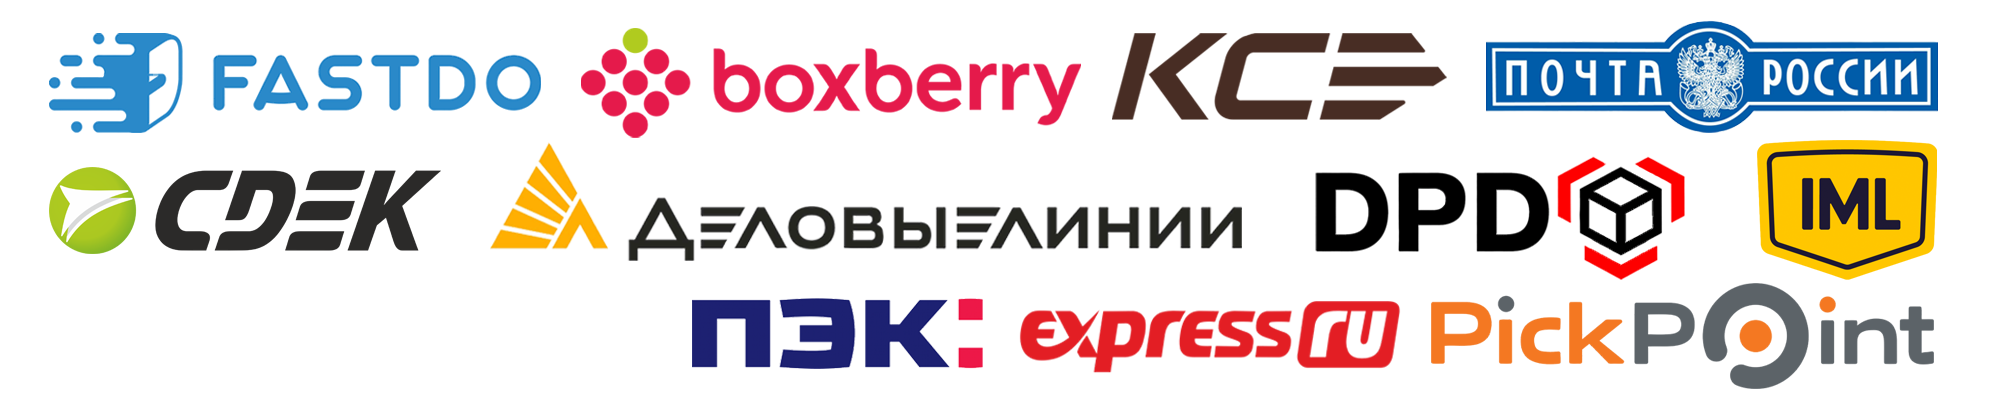 Логотипы служб доставки - боксберри, ксе, сдэк, дпд, фастду, имл, почта россии